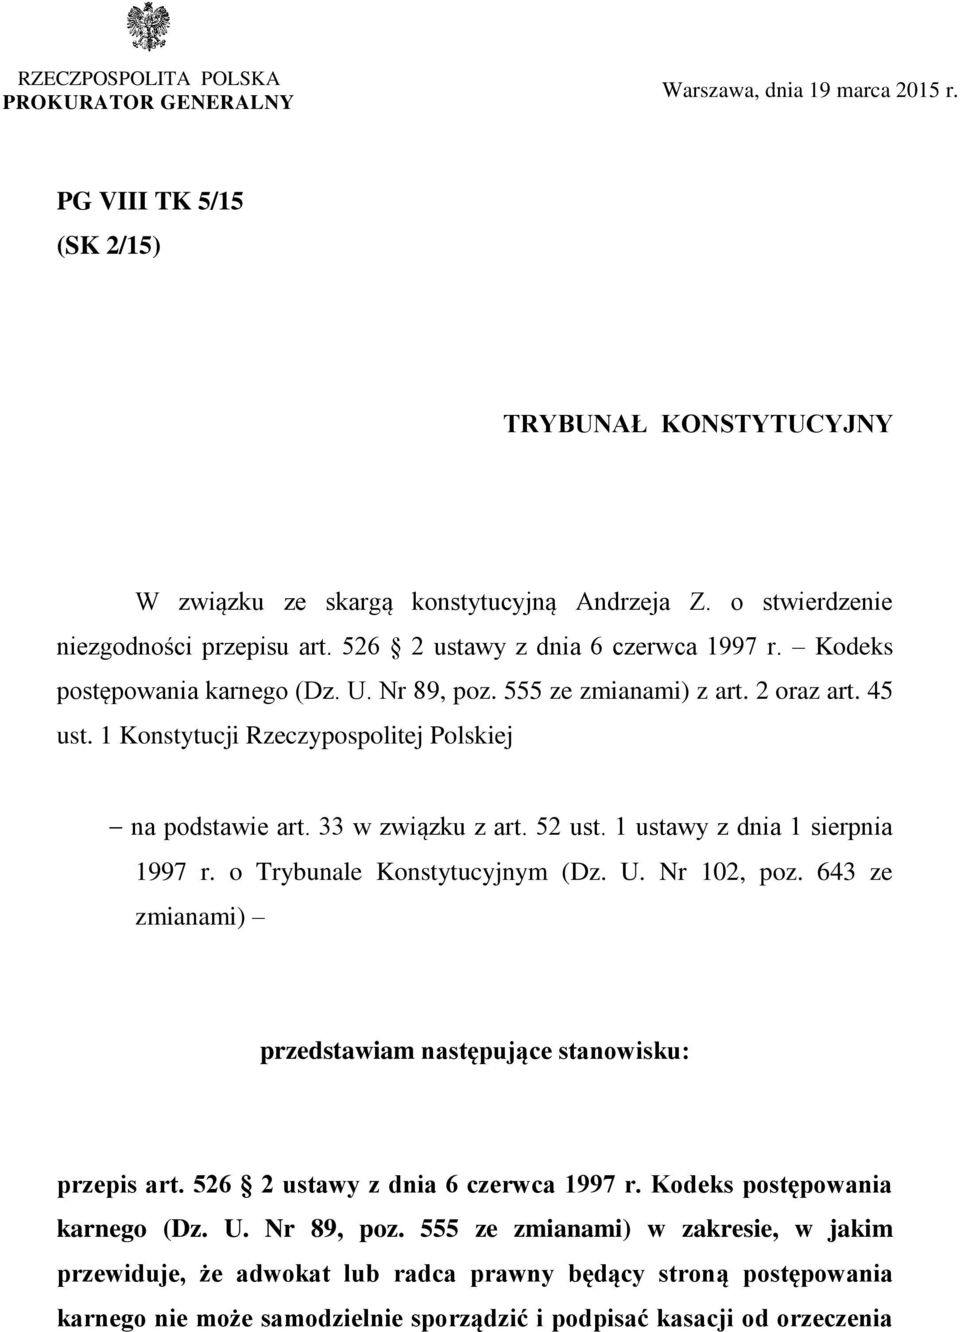 1 Konstytucji Rzeczypospolitej Polskiej na podstawie art. 33 w związku z art. 52 ust. 1 ustawy z dnia 1 sierpnia 1997 r. o Trybunale Konstytucyjnym (Dz. U. Nr 102, poz.